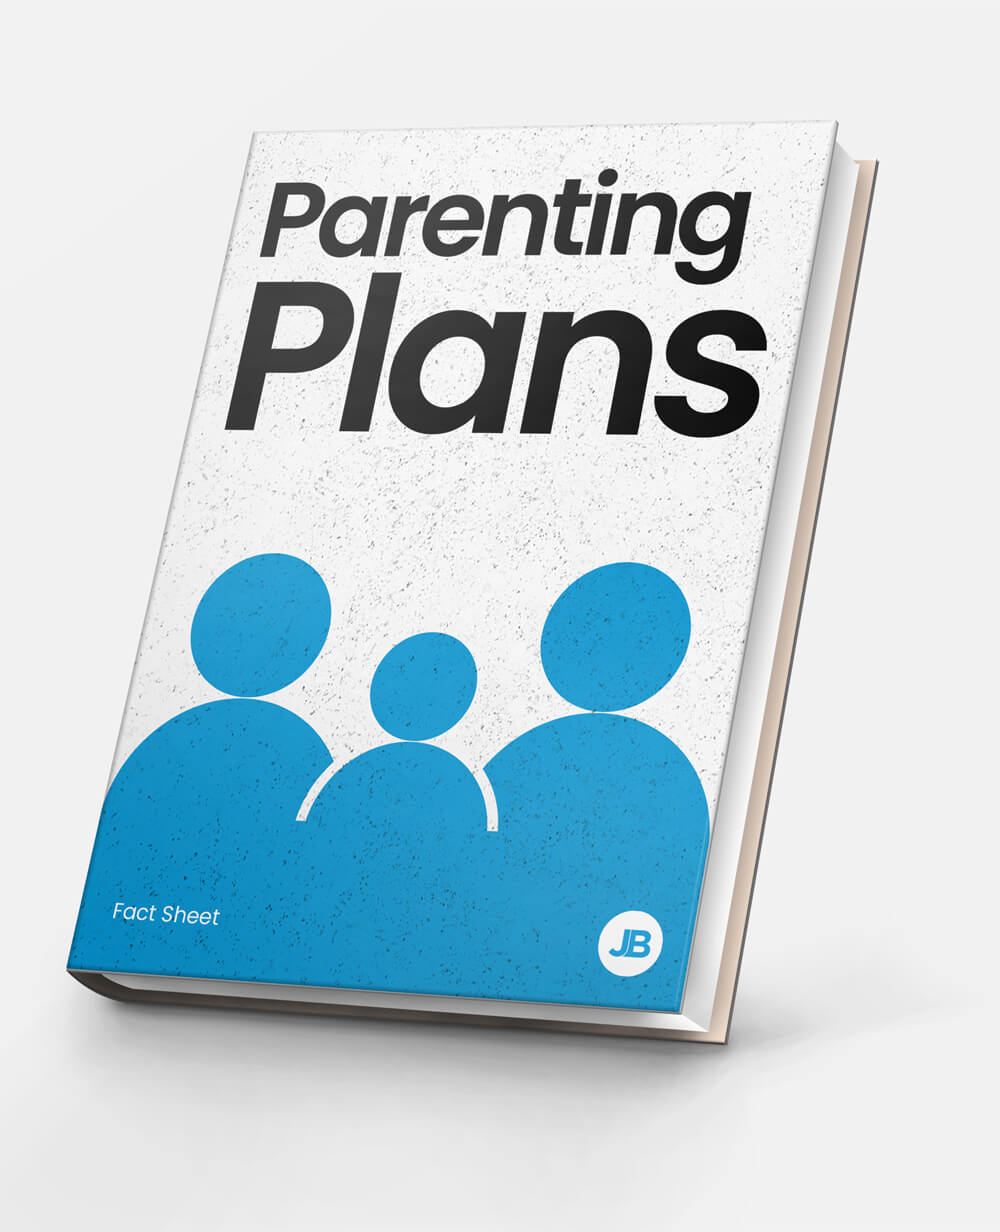 Parenting-plans